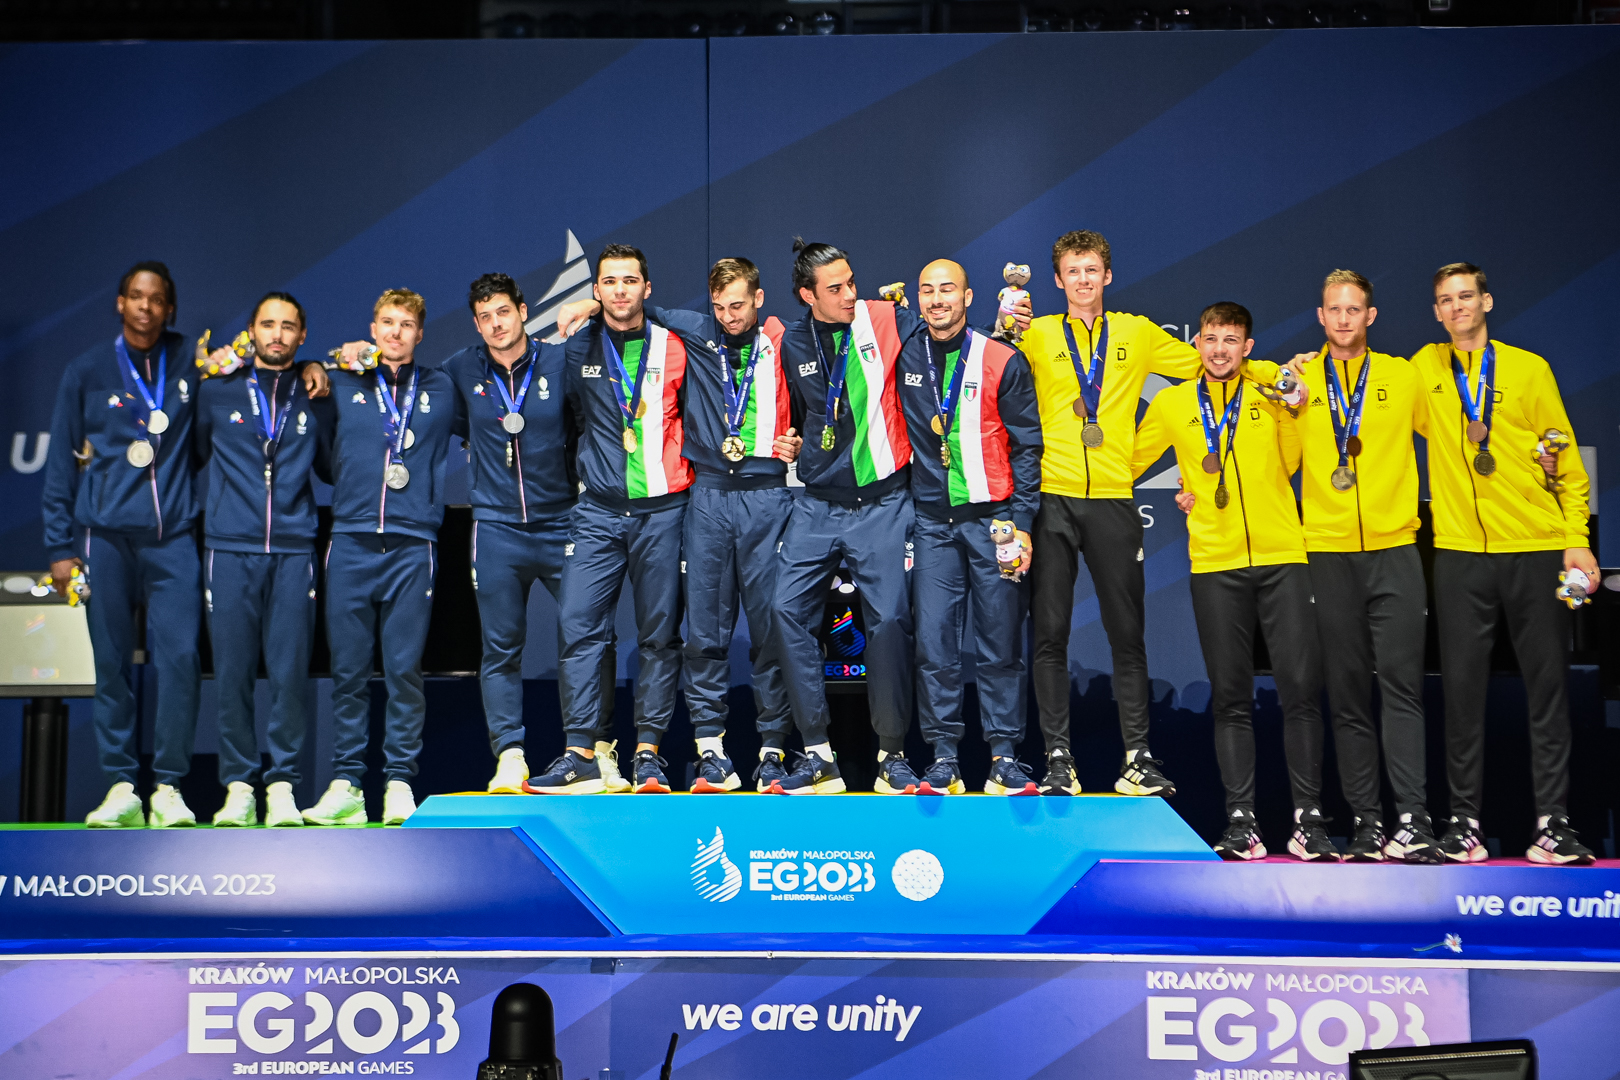 Italian gold in men’s team foil